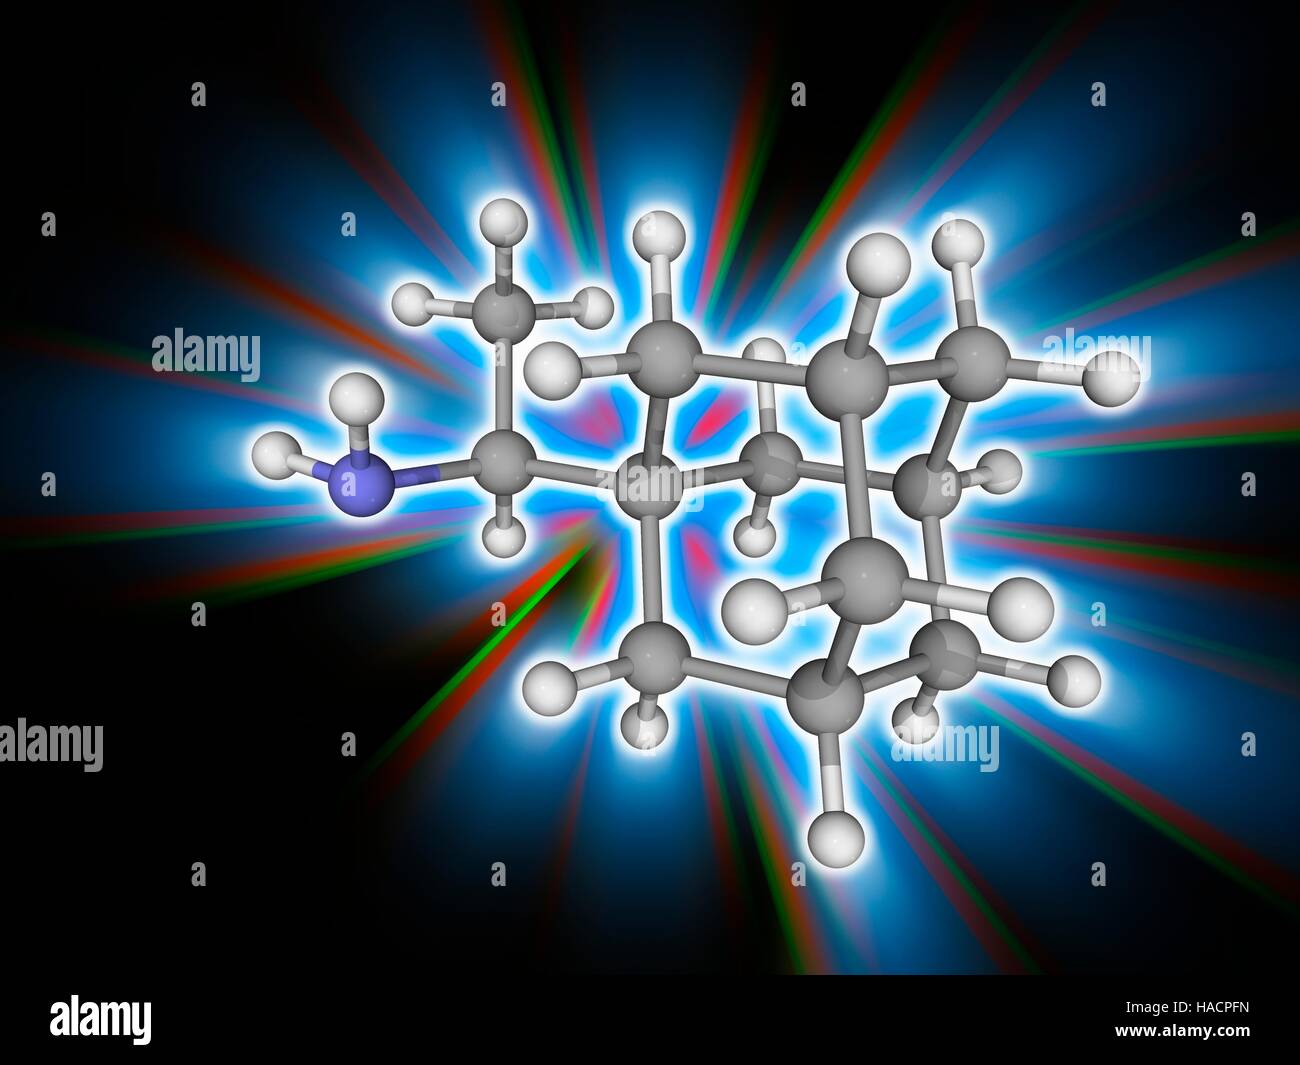 Rimantadine. Molekülmodell antivirale Medikament Rimantadine (C12. H21. (N), als Flumadine vermarktet. Dieses Medikament wird zur Behandlung von Influenza-A-Infektionen. Atome als Kugeln dargestellt werden und sind farblich gekennzeichnet: Kohlenstoff (grau), Wasserstoff (weiß) und Stickstoff (blau). Abbildung. Stockfoto